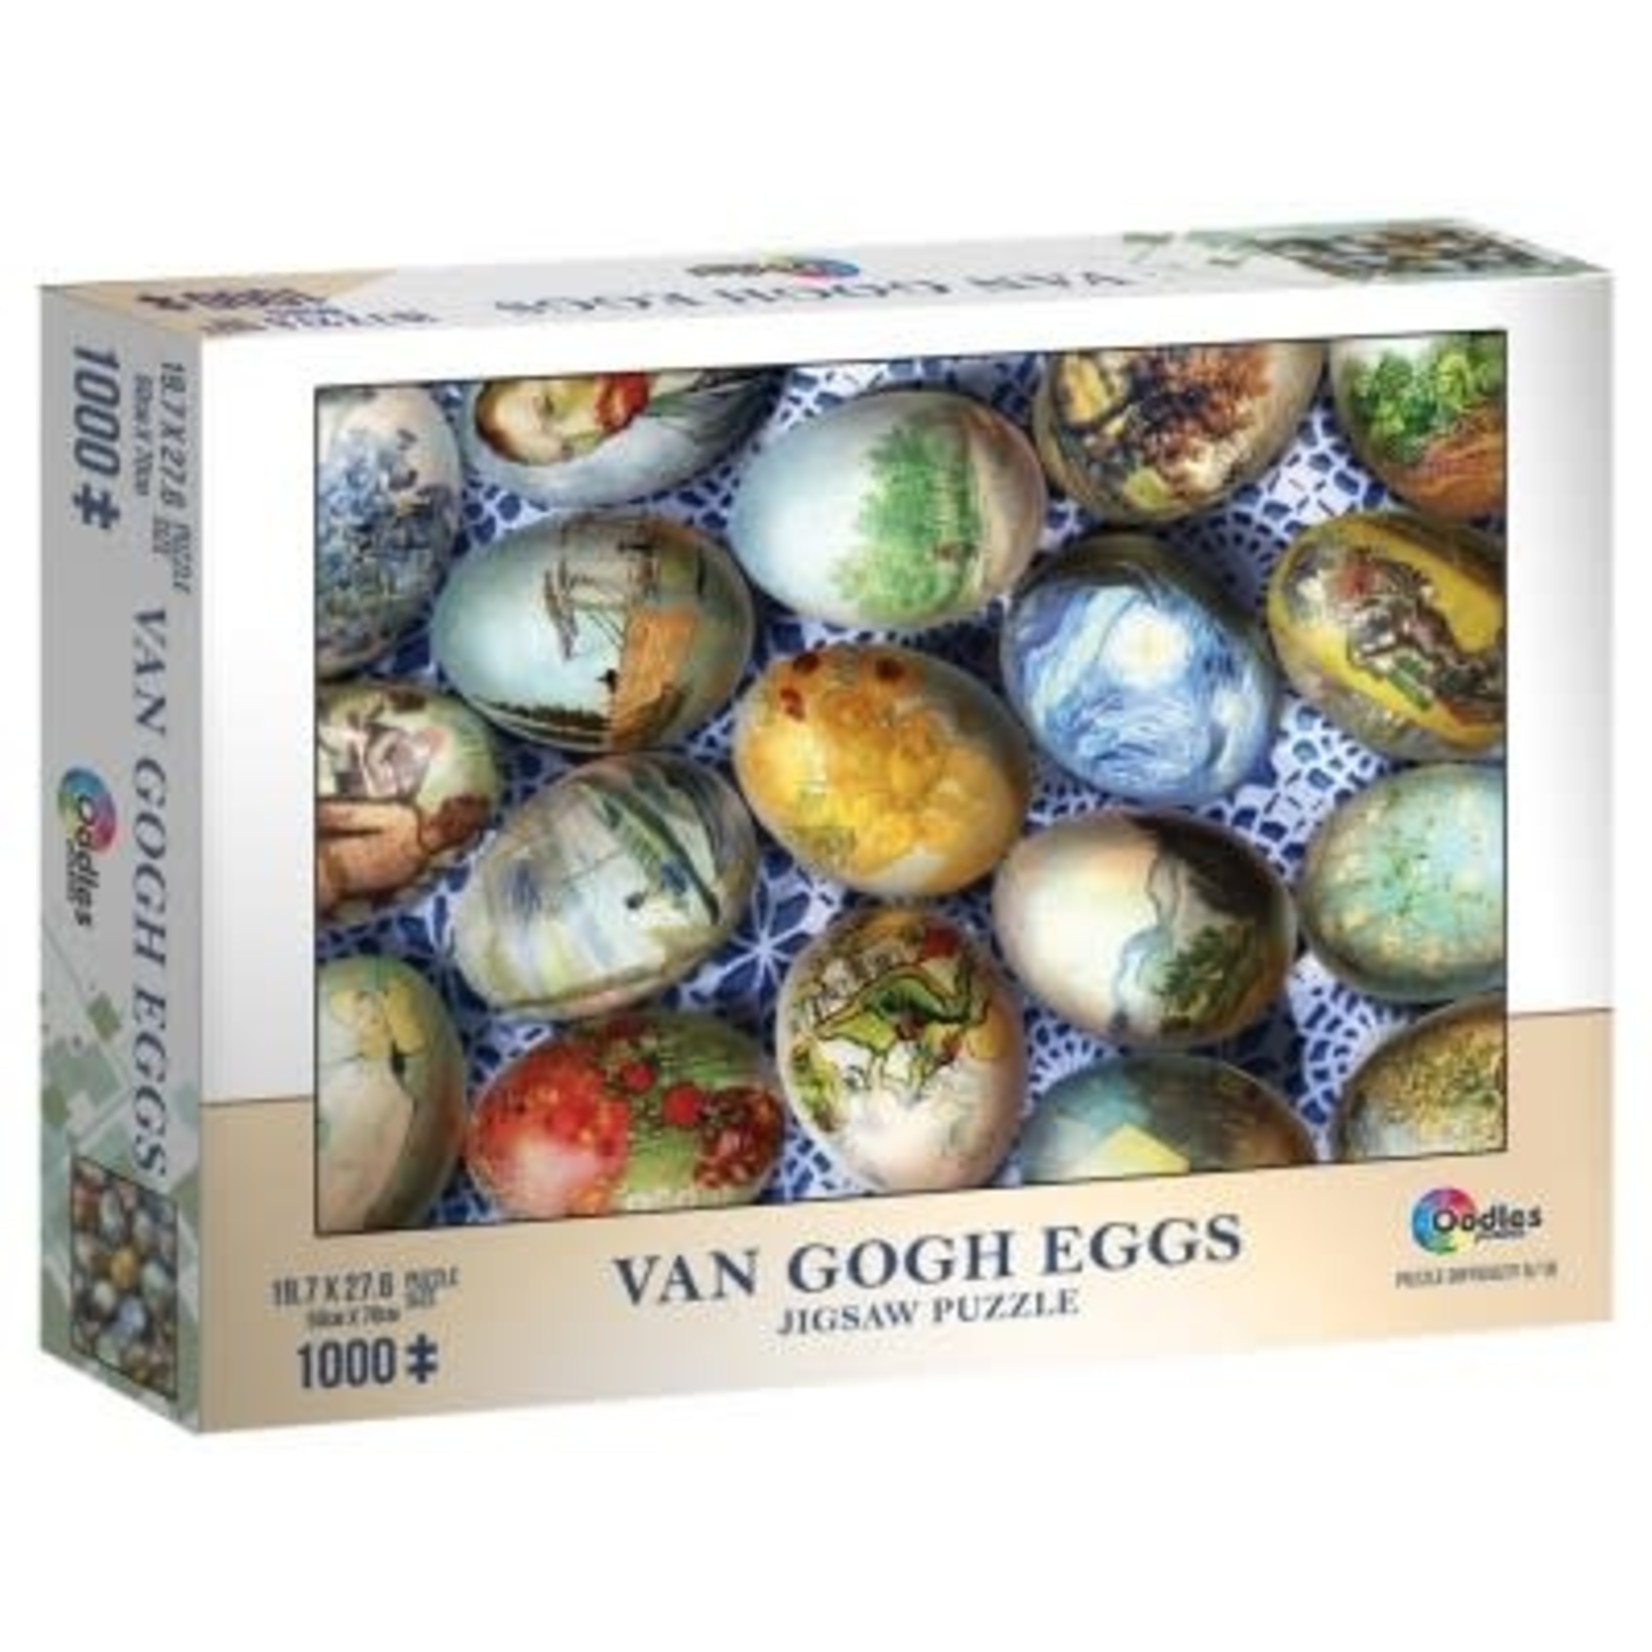 Puzzle: Van Gogh Eggs 1000pc